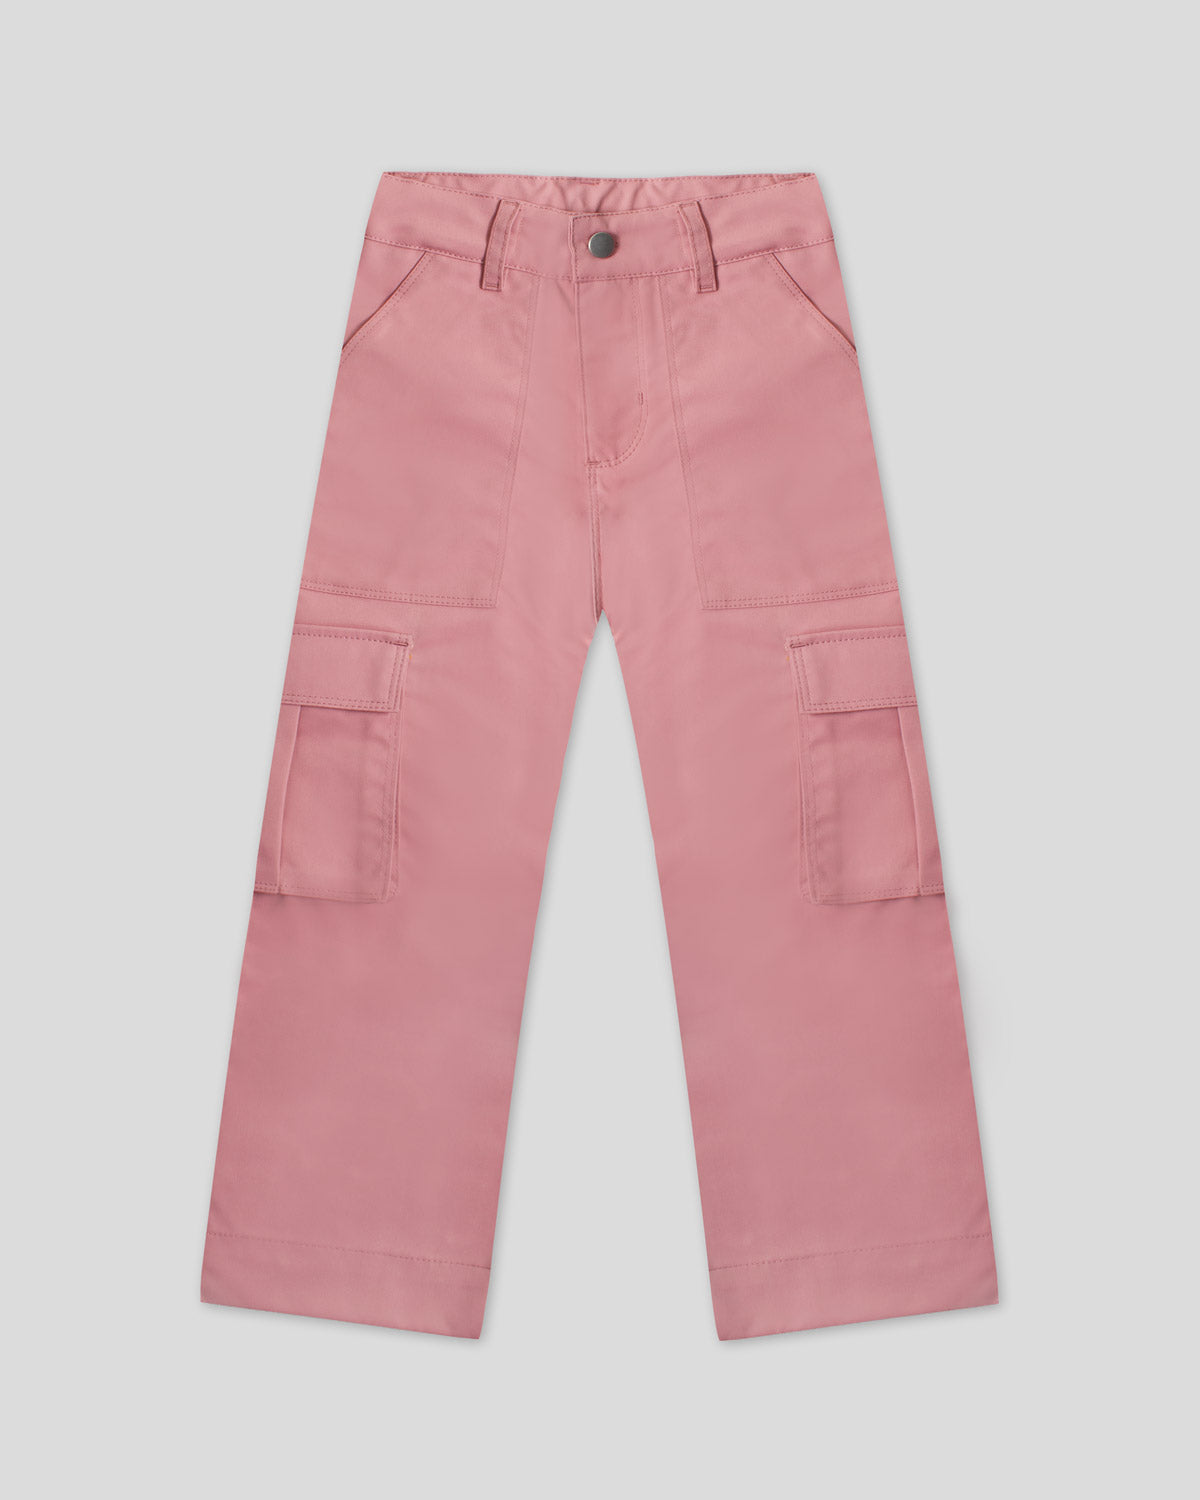 Pantalón tipo cargo palo de rosa para niña